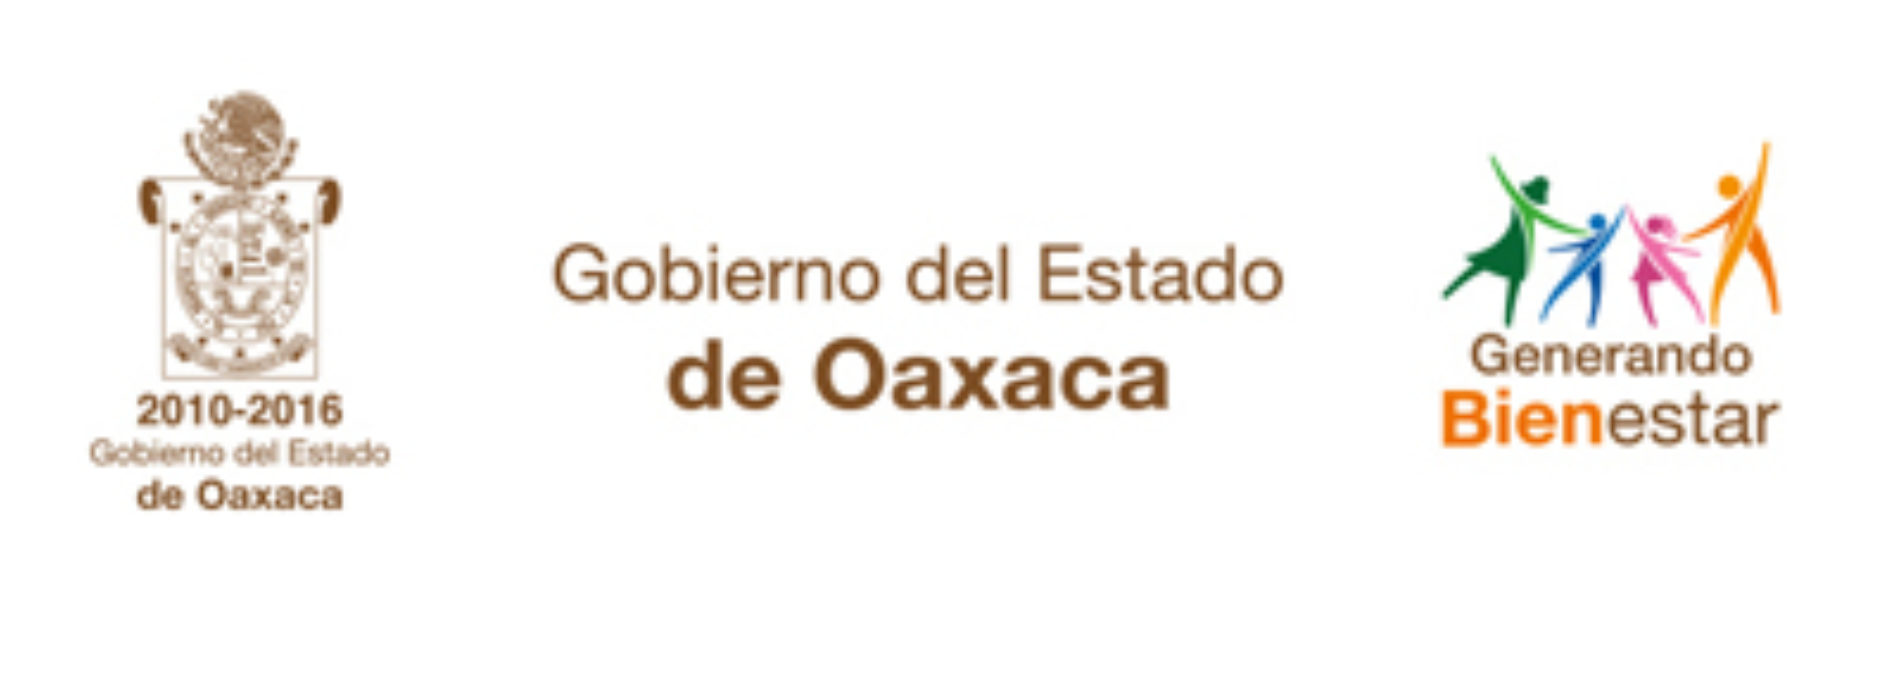 Emite Gobierno de Oaxaca alertamiento por Evento de Mar de Fondo